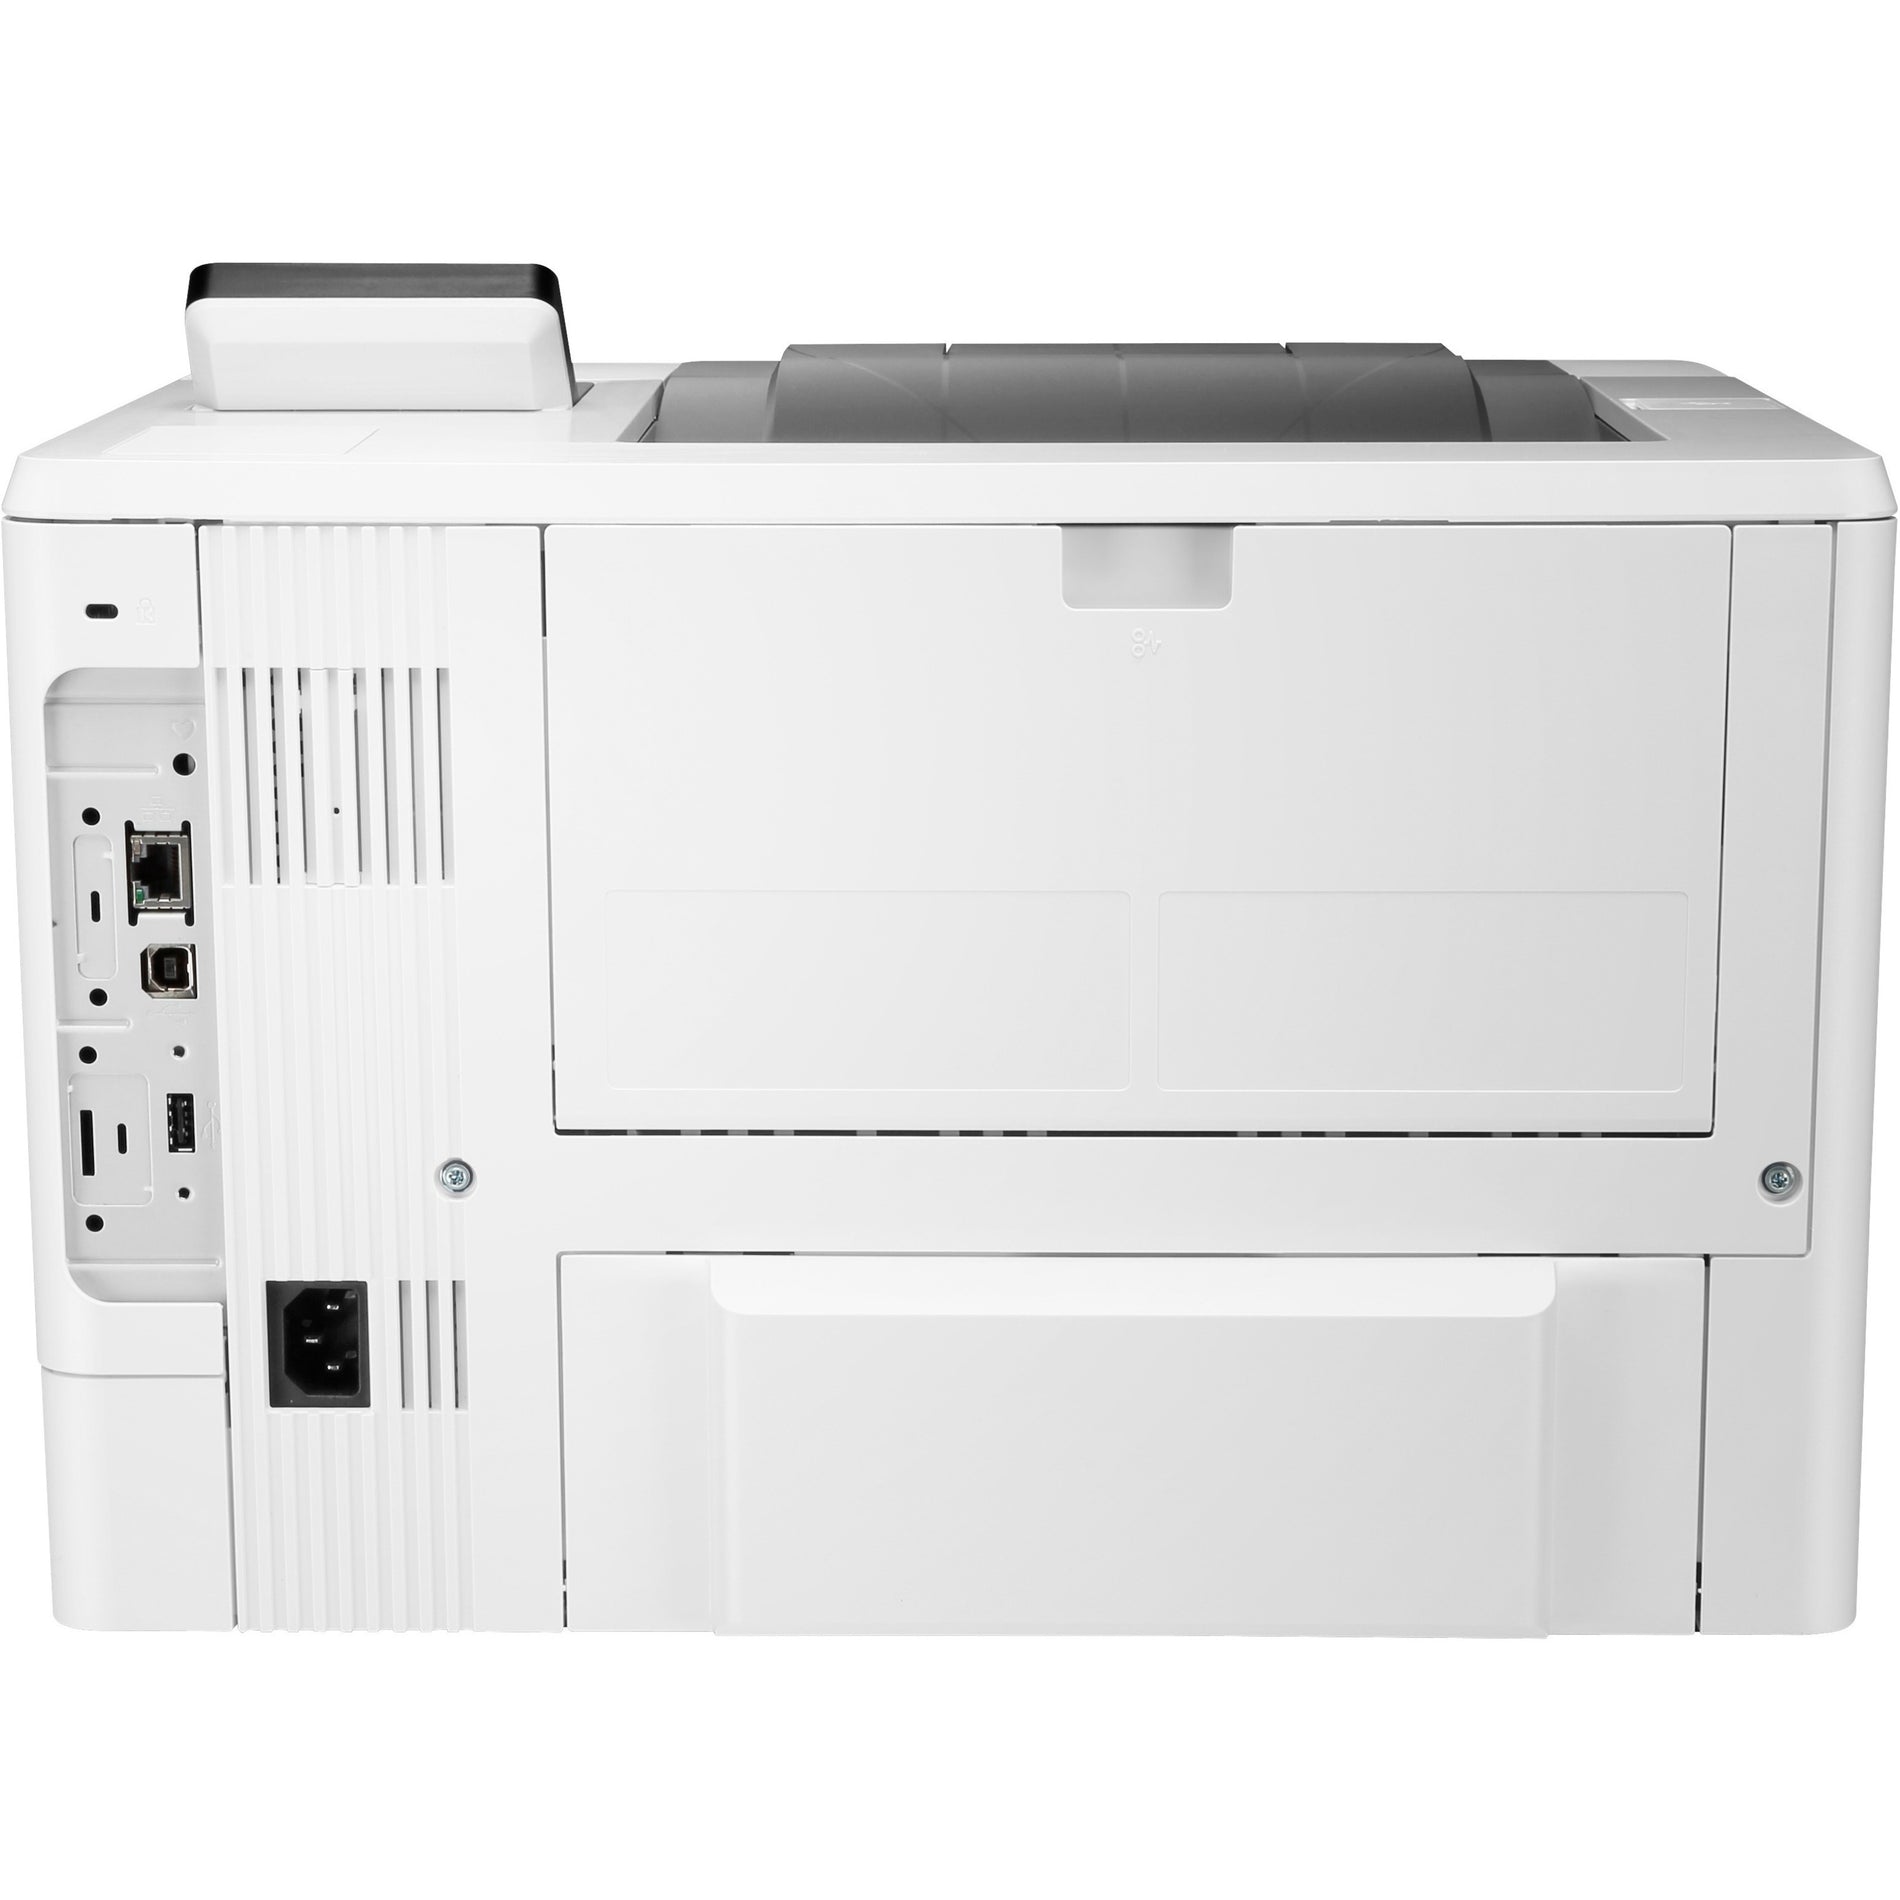 HP 1PV87A#BGJ LaserJet Enterprise M507dn Desktop Laser Printer - Monochrome, 45 ppm, Automatic Duplex Printing, 1200 x 1200 dpi